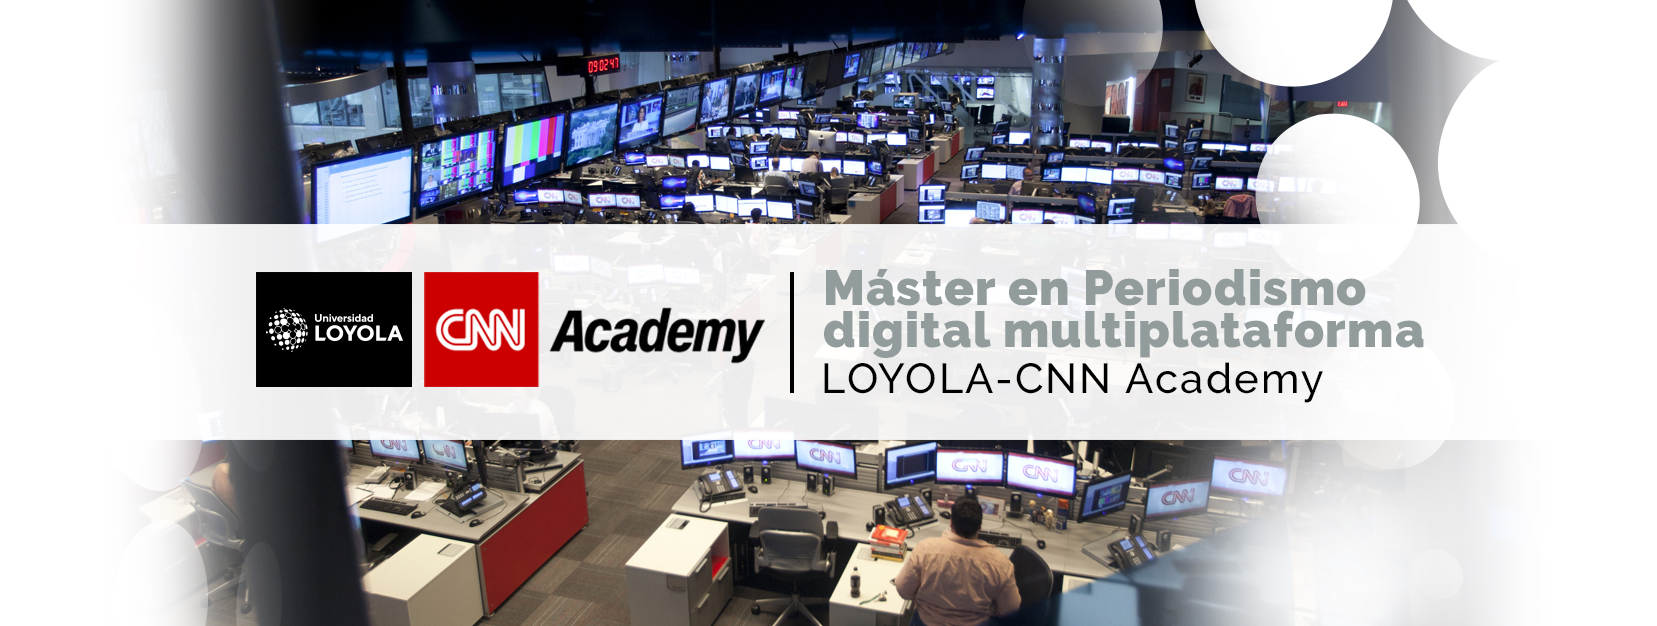 Máster en Periodismo Digital Multiplataforma LOYOLA - CNN Academy